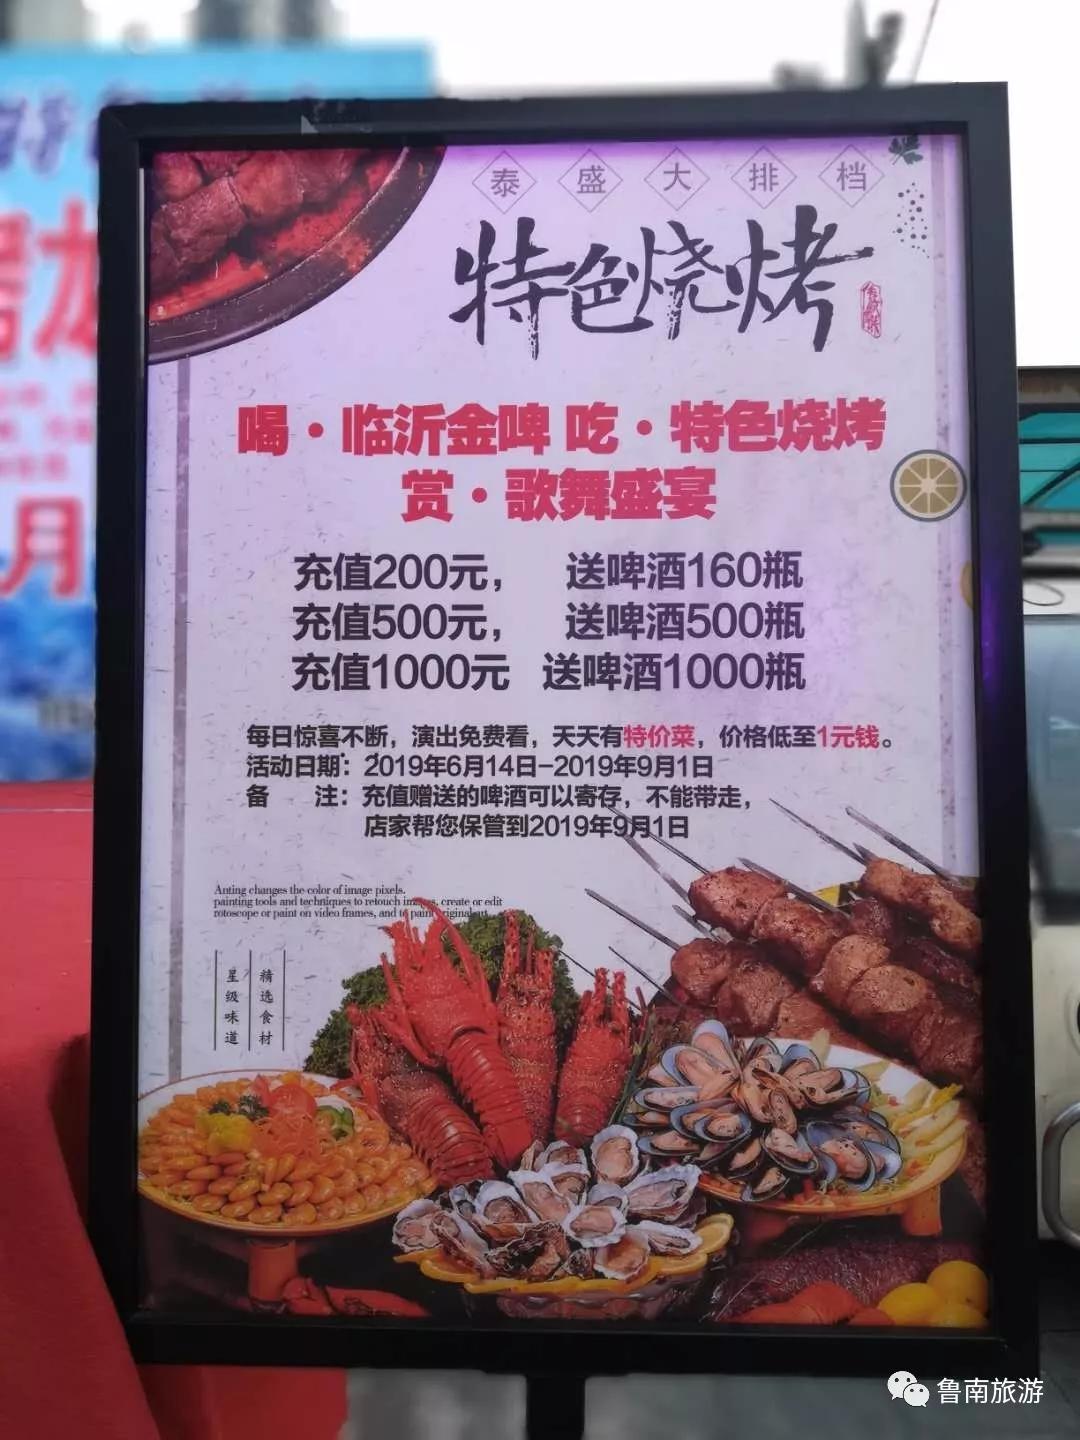 尝鲜喽 烧烤龙虾节嗨爆泰盛金汤一号美食广场